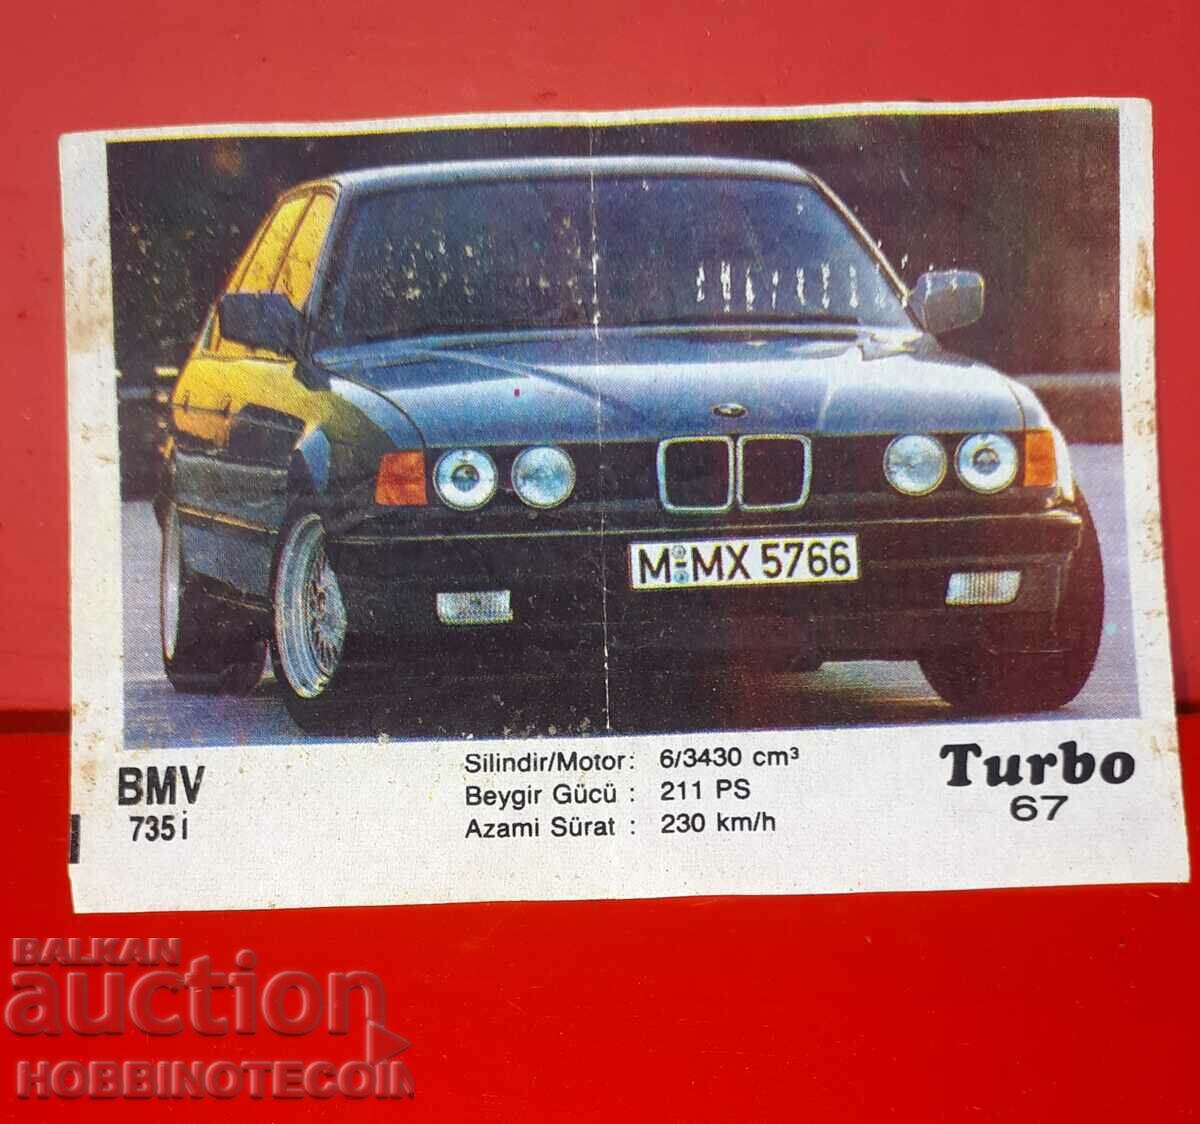 КАРТИНКА ТУРБО TURBO N 67 BMW 735 I